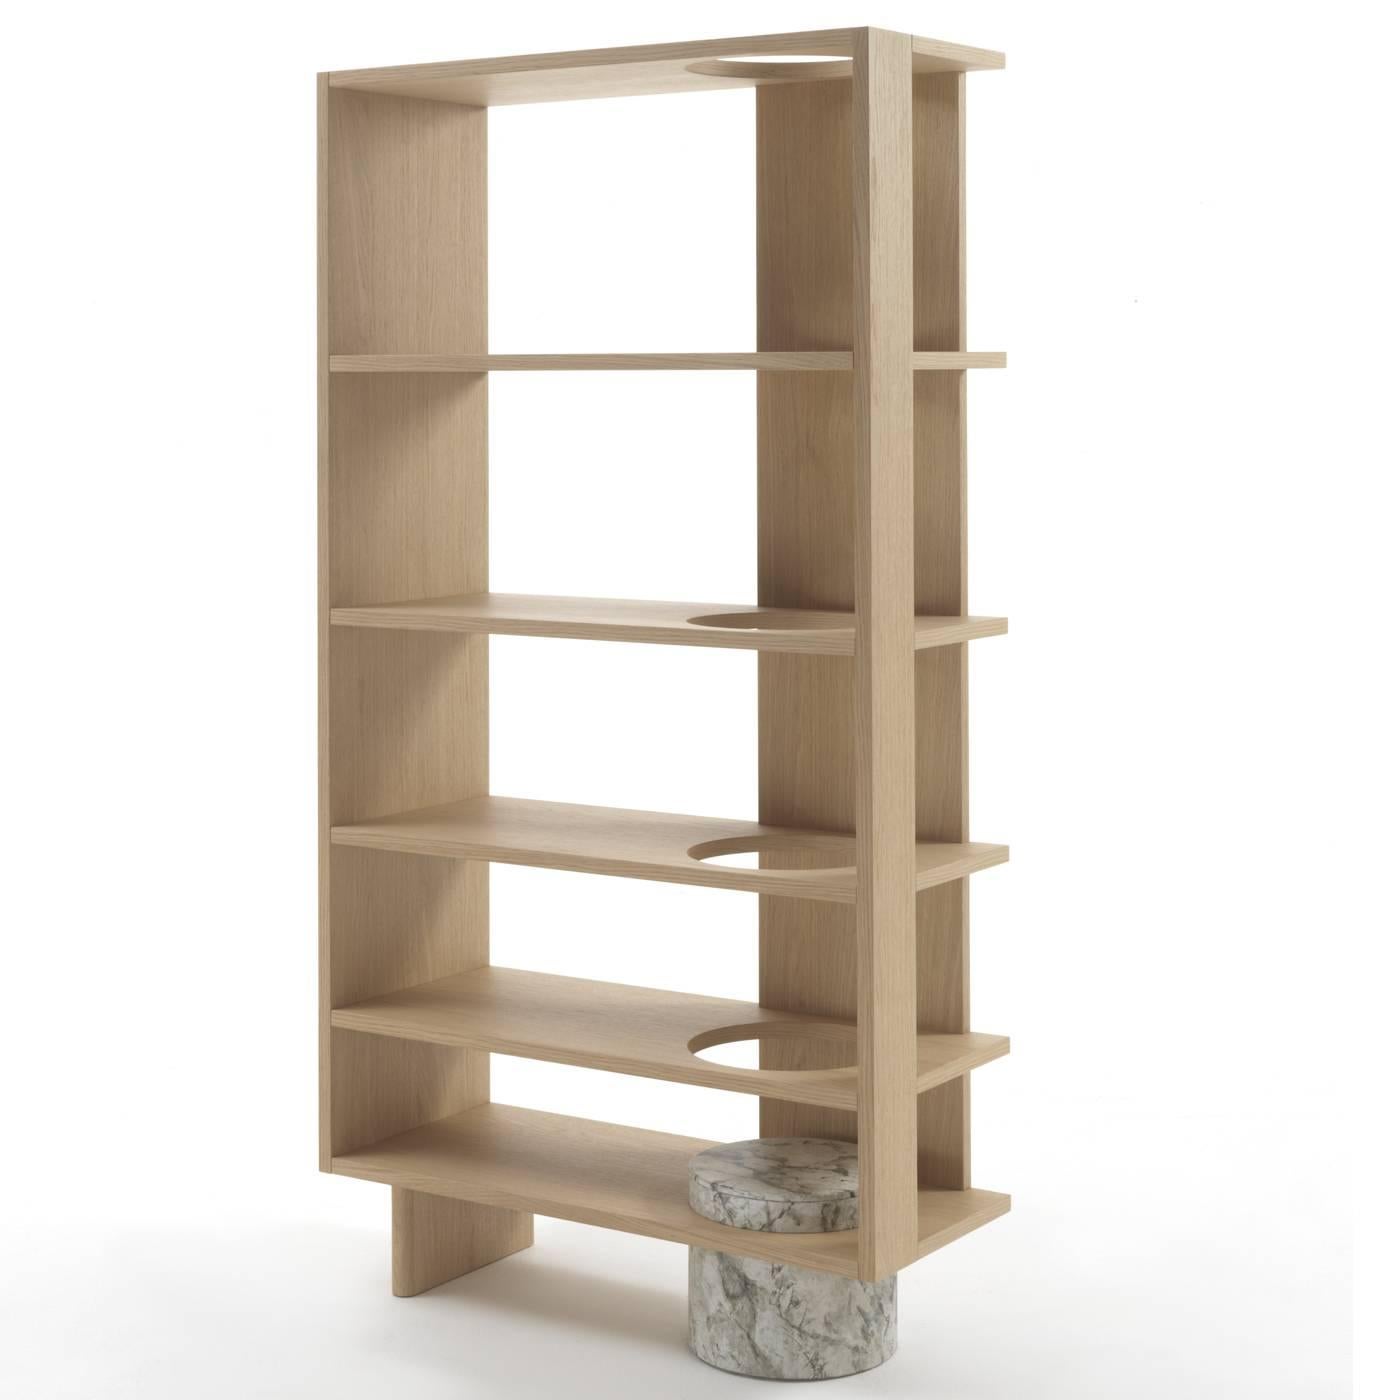 The shelves of this elegant bookshelf available in oak or 